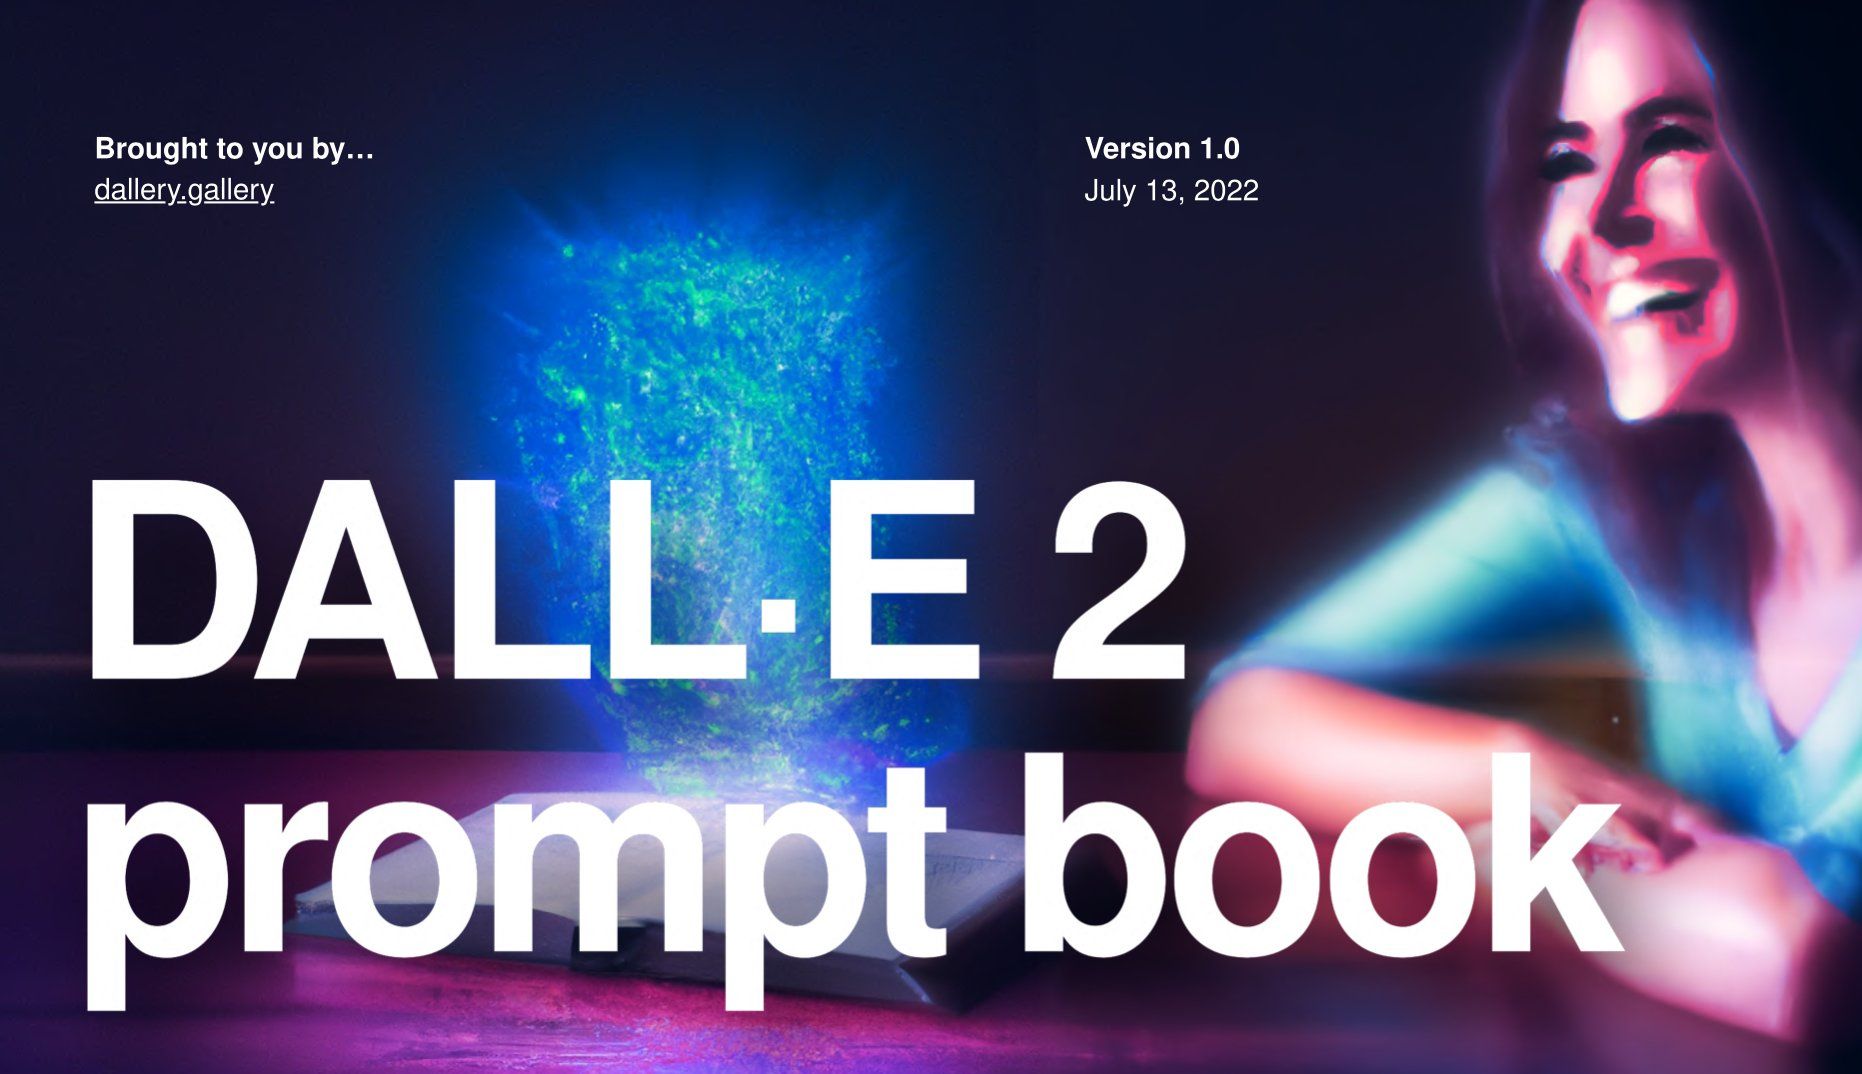 The DALL-E 2 Prompt Book